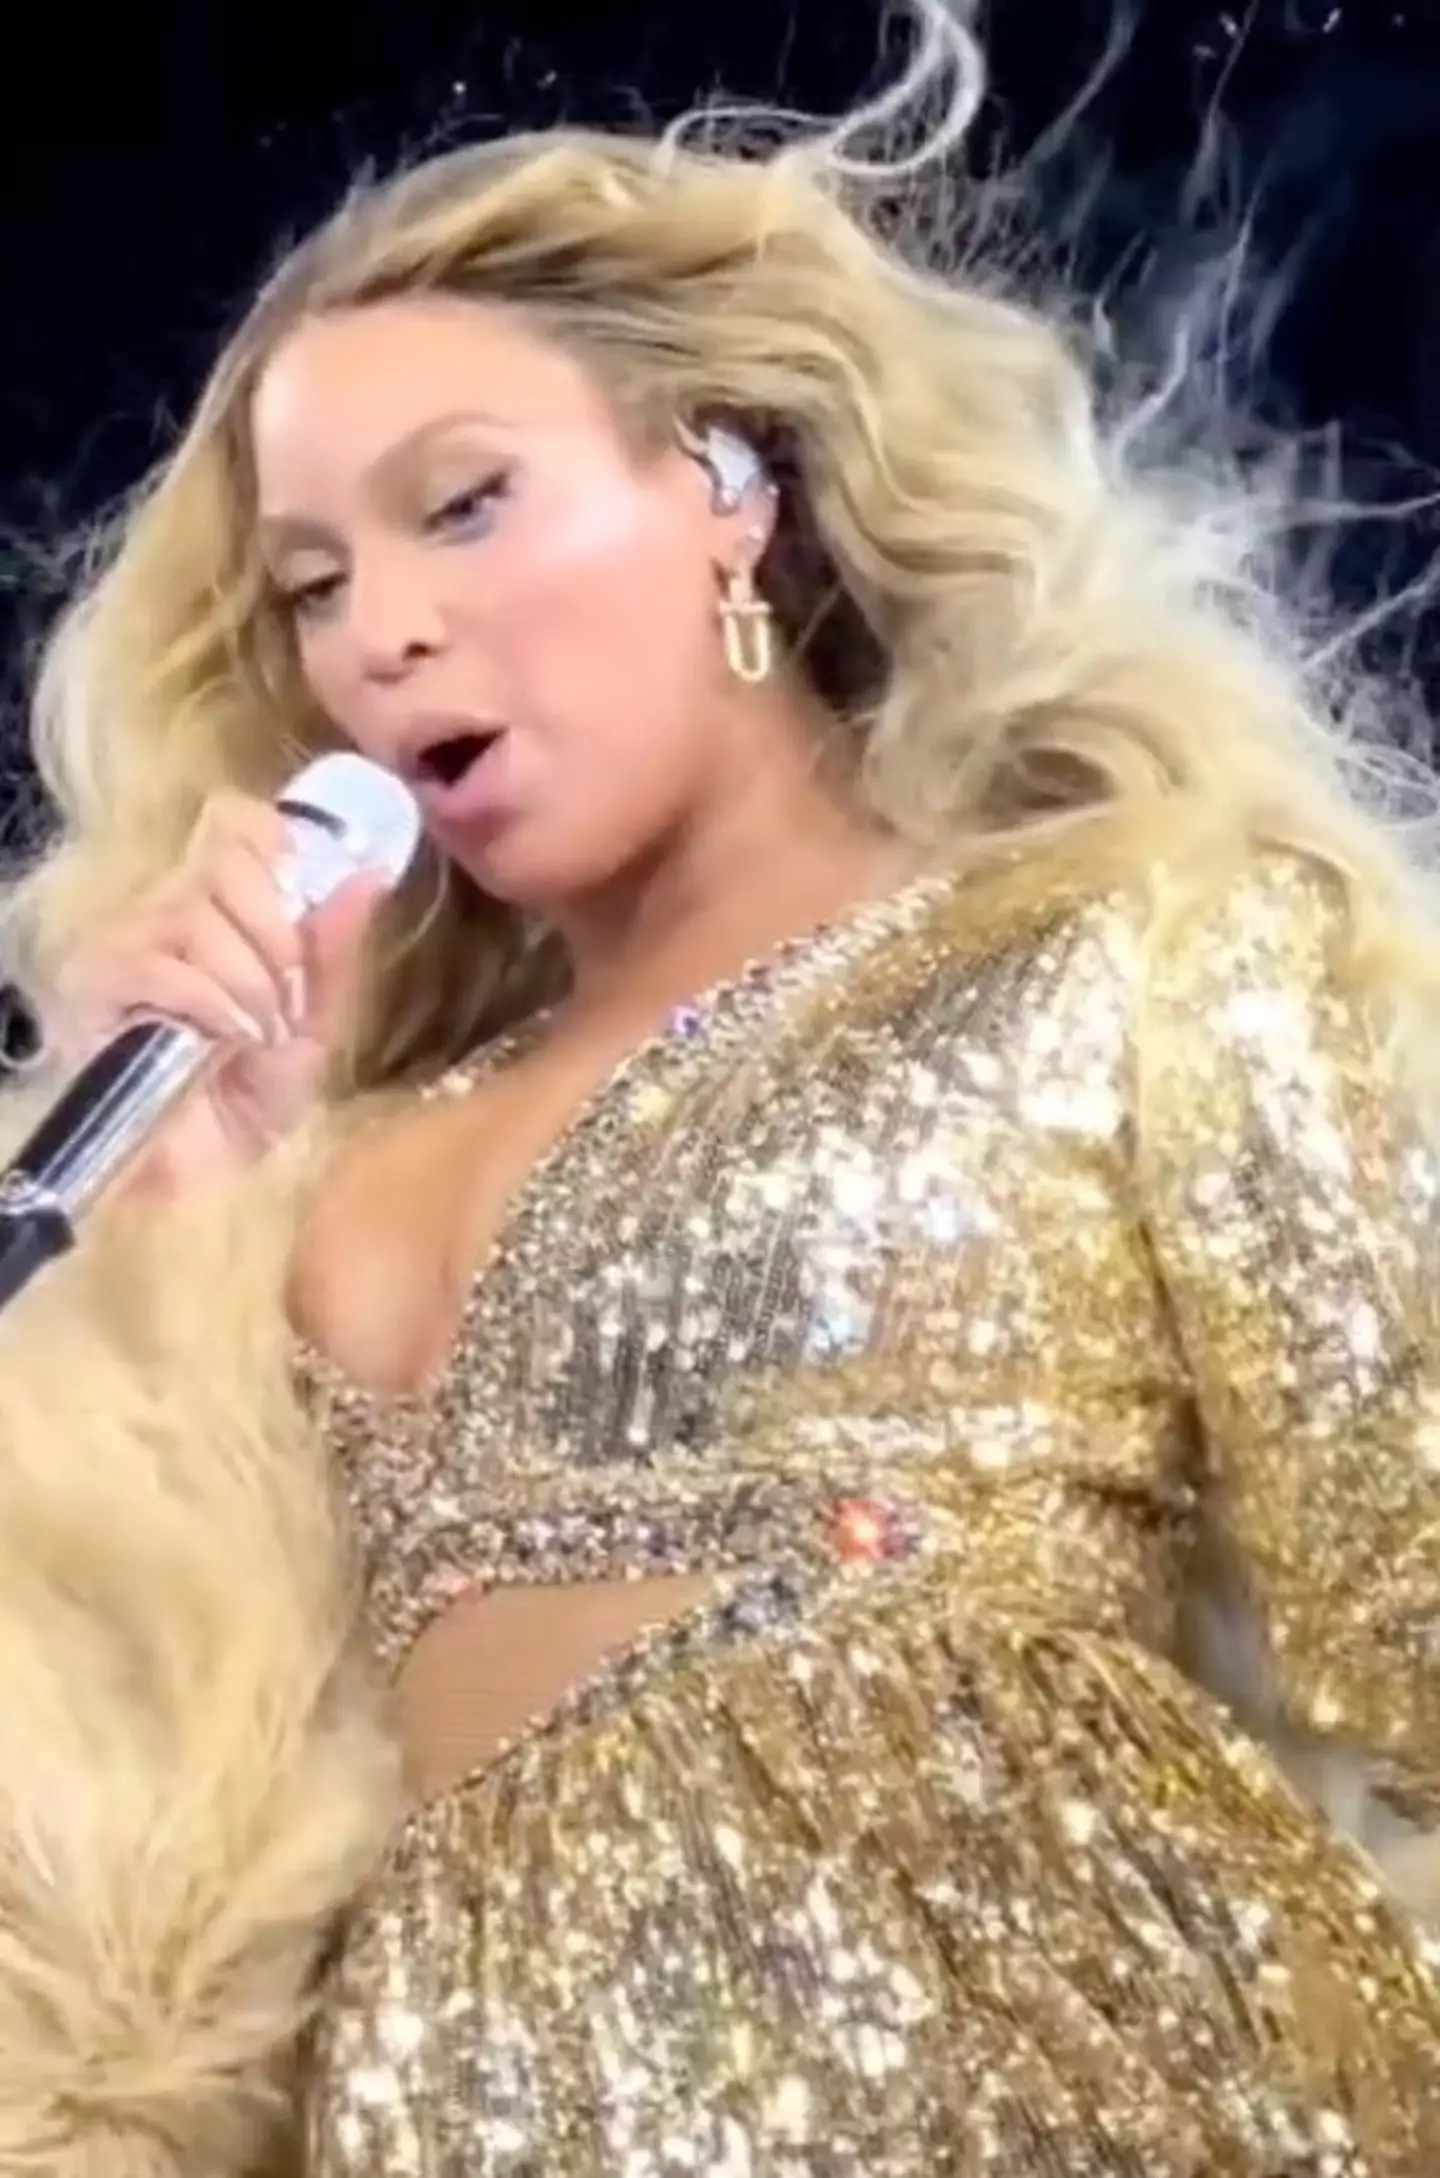 Beyoncé has scored a nomination despite releasing no music videos for Renaissance.